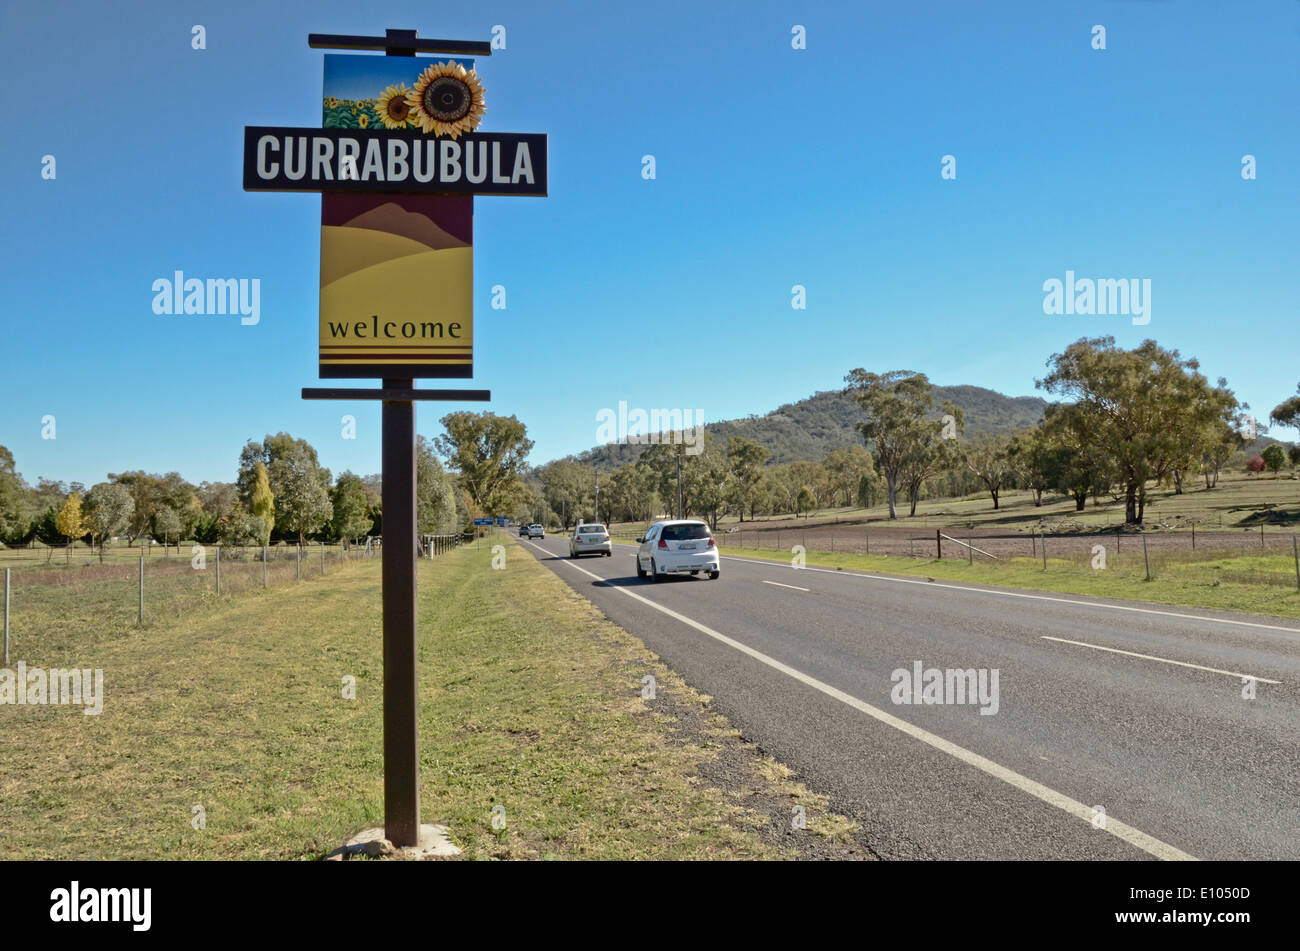 Willkommen Sie bei Currabubula NSW Australia am Straßenrand Zeichen Stockfoto